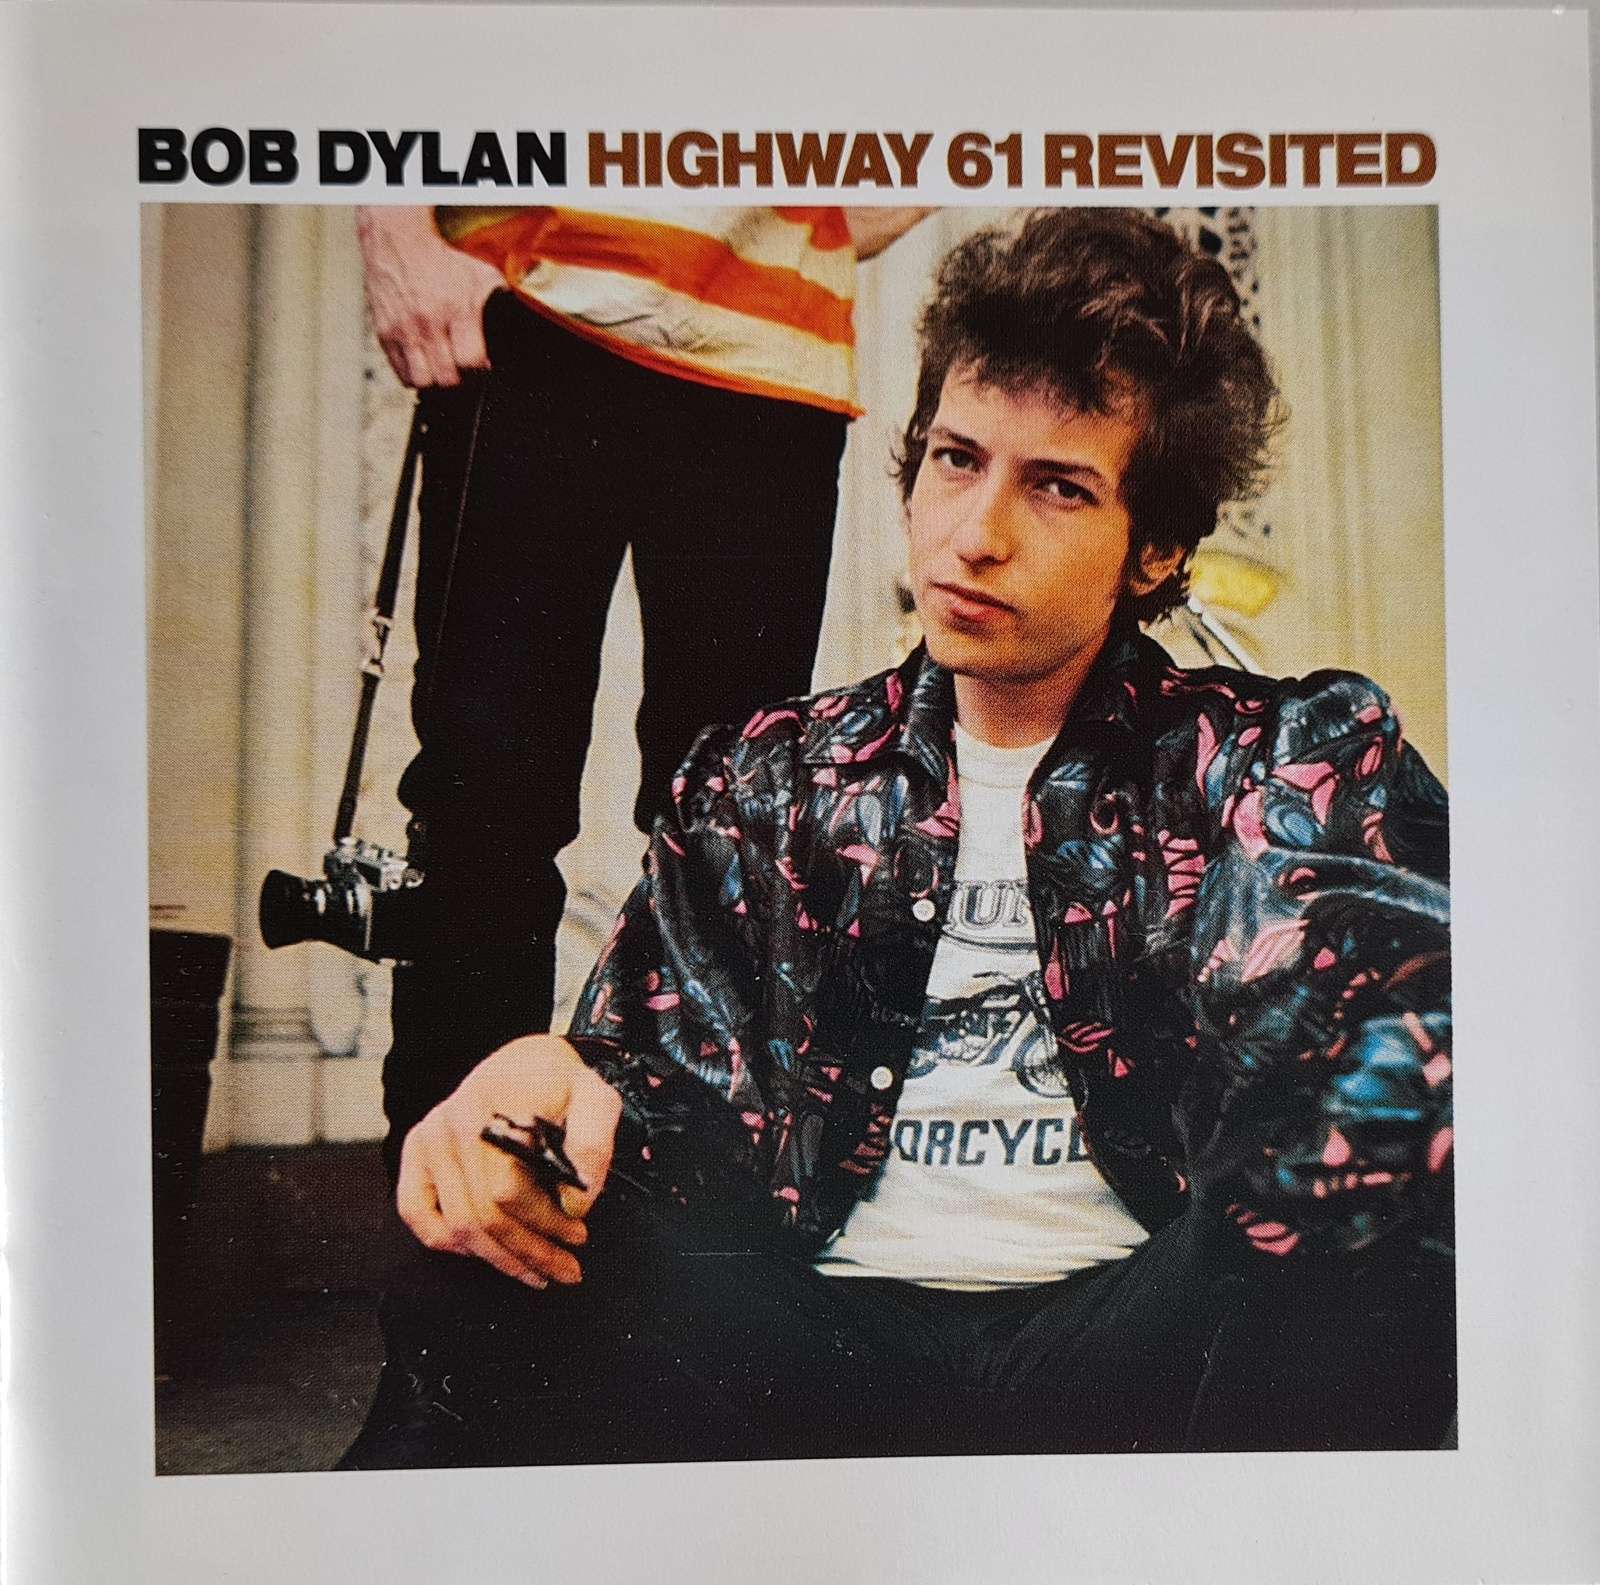 Bob Dylan - Highway 61 Revisited (CD)